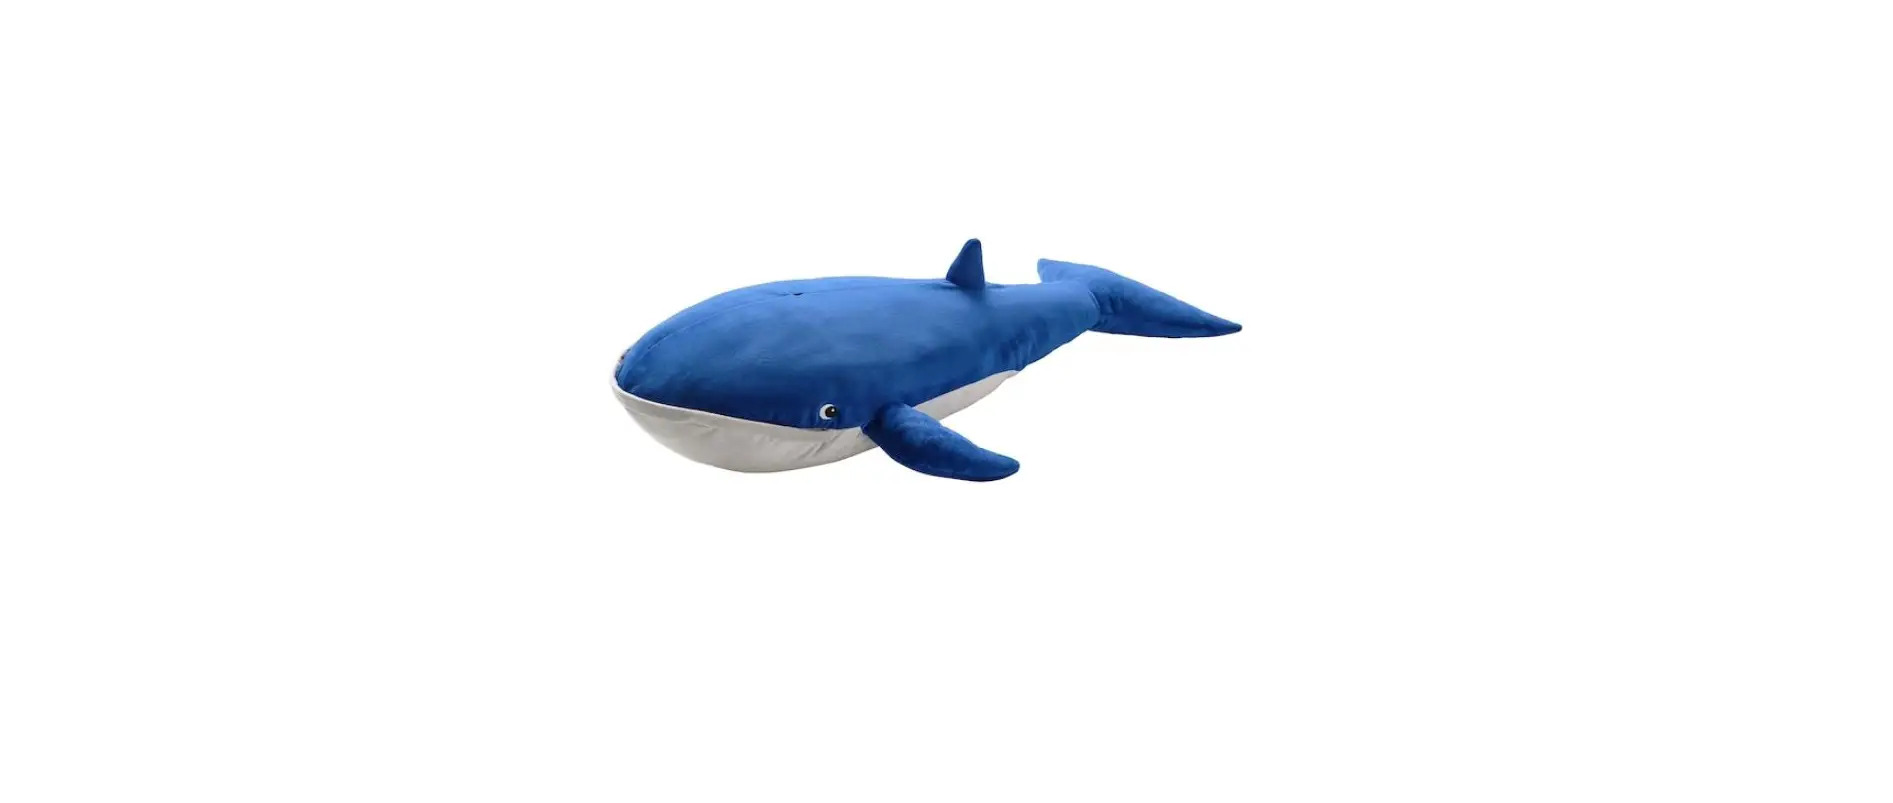 BLÅVINGAD Soft Toy Blue Whale 39 Inch